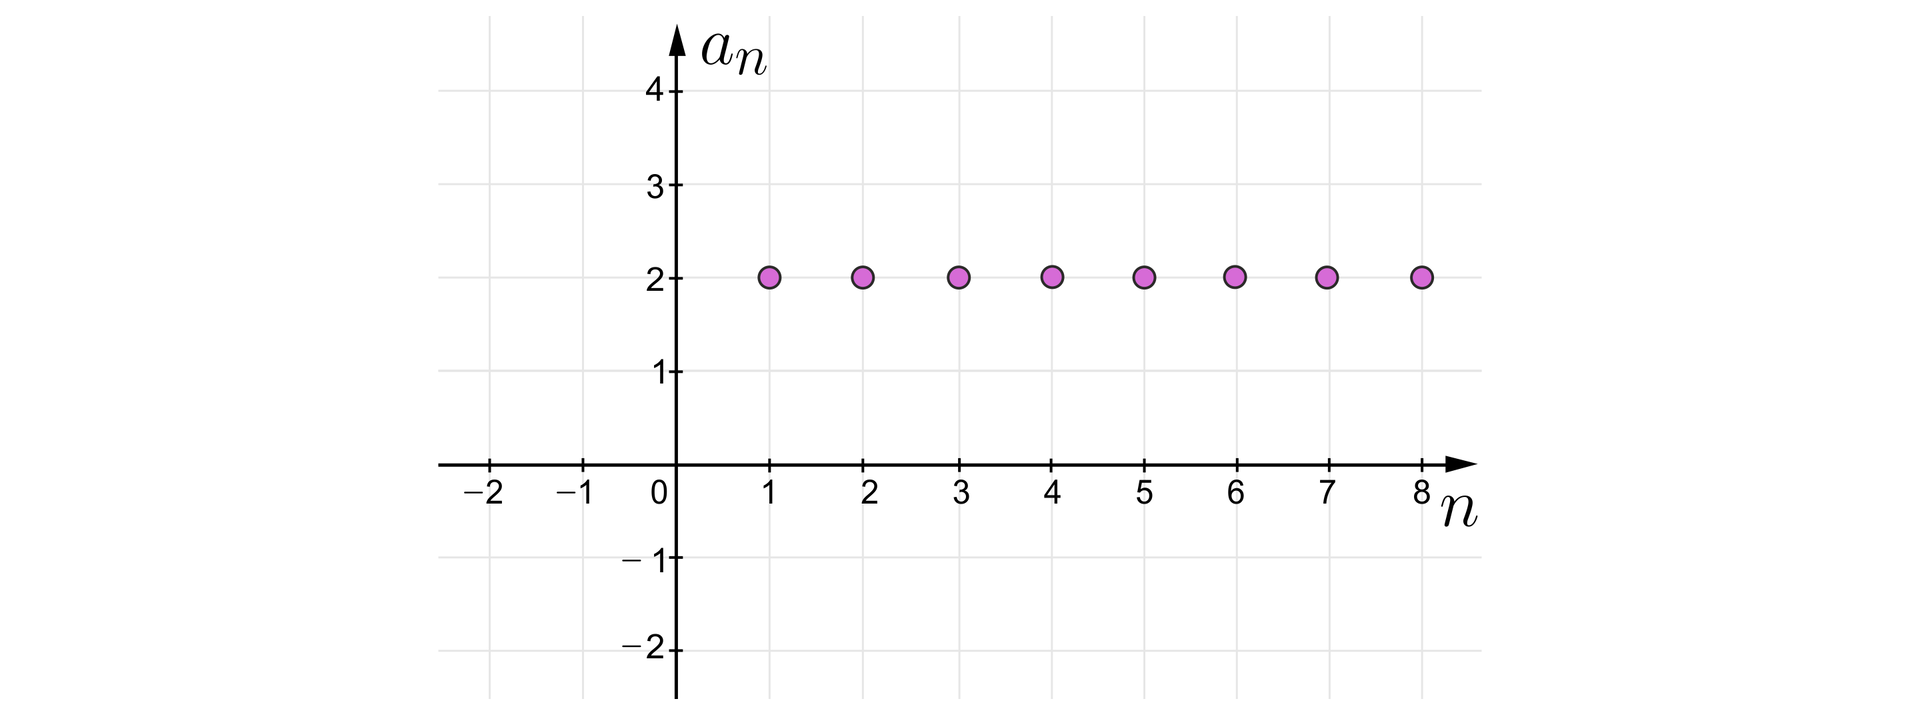 Ilustracja przedstawia interpretację graficzną ciągu an w układzie współrzędnych z poziomą osią n od minus dwóch do ośmiu i z pionową osią an od minus dwóch do czterech. Kolejne wyrazy ciągu to punkty o następujących współrzędnych:  1;2, 2;2, 3;2, 4;2, 5;2, 6;2, 7;2, 8;2.